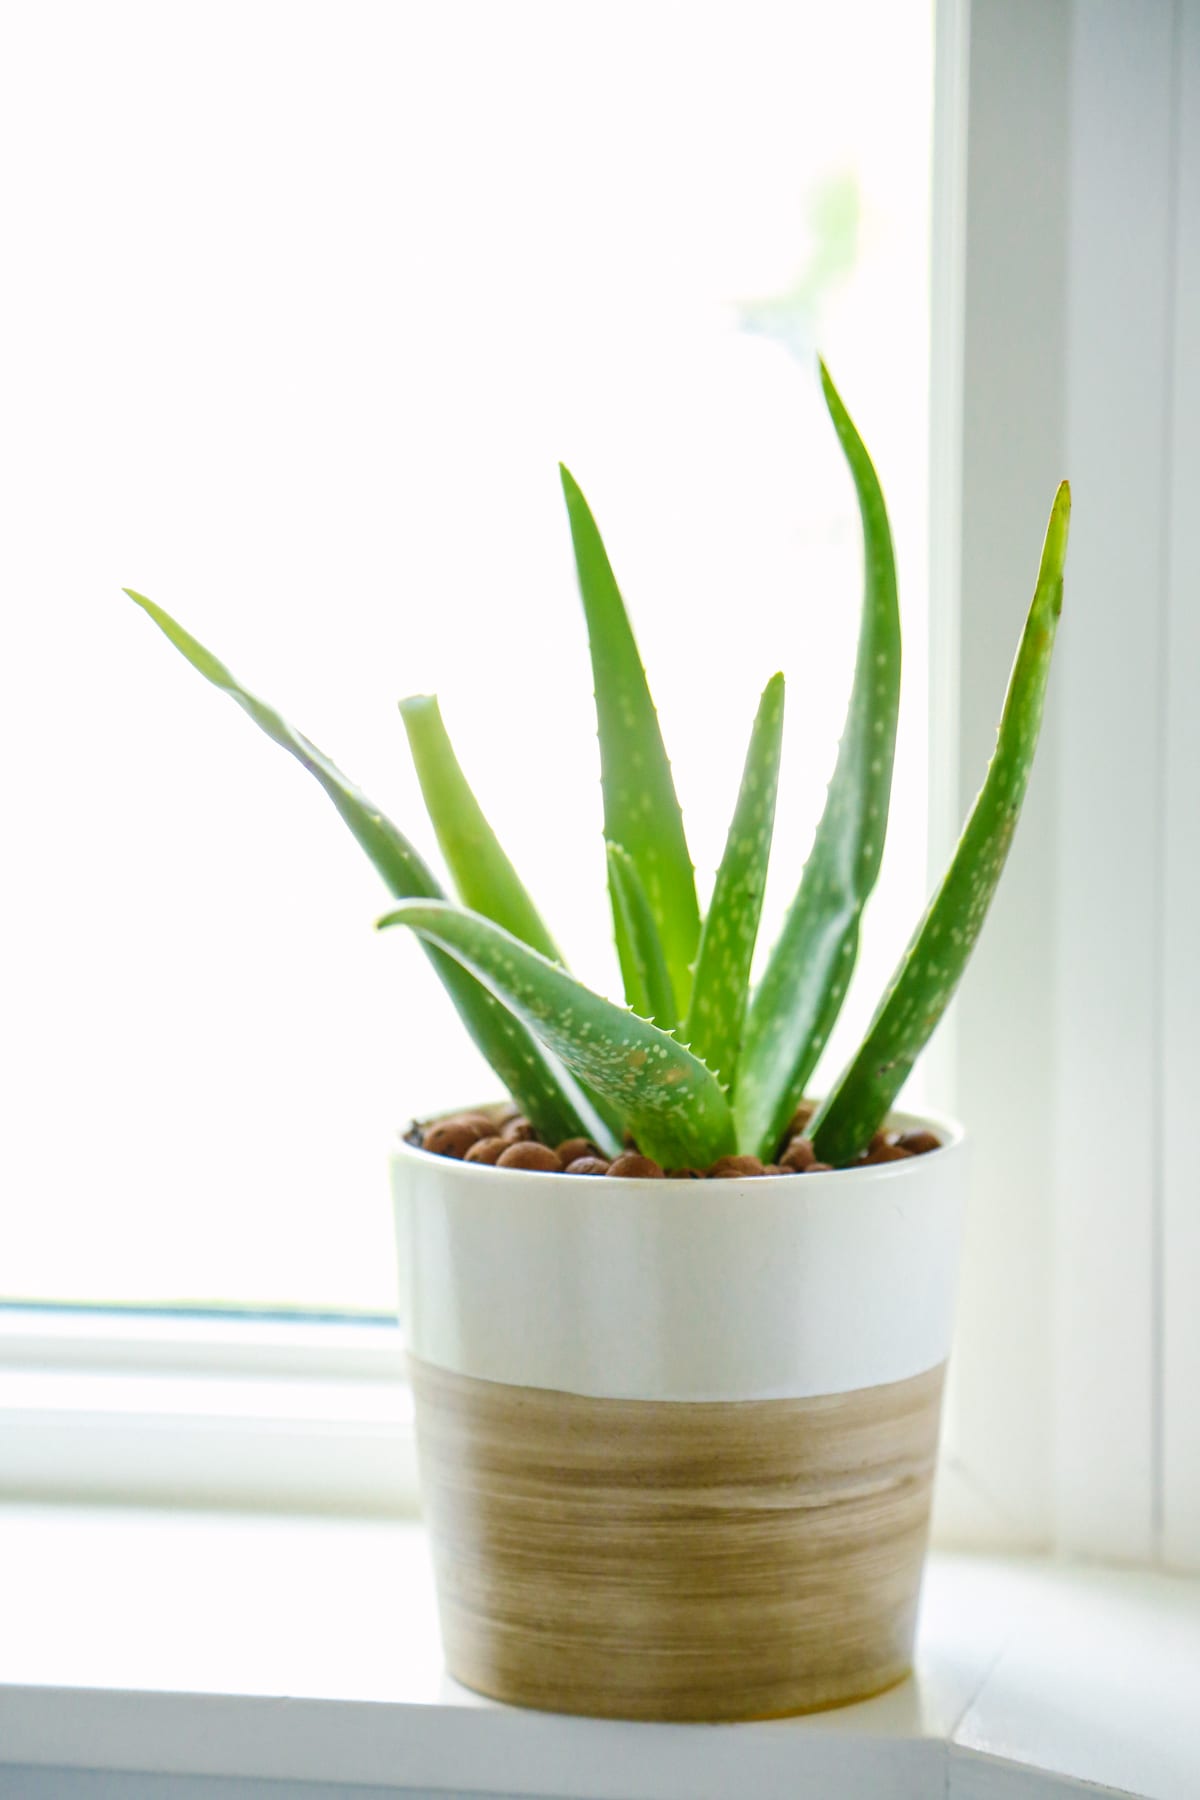 Aloe vera plant for skincare